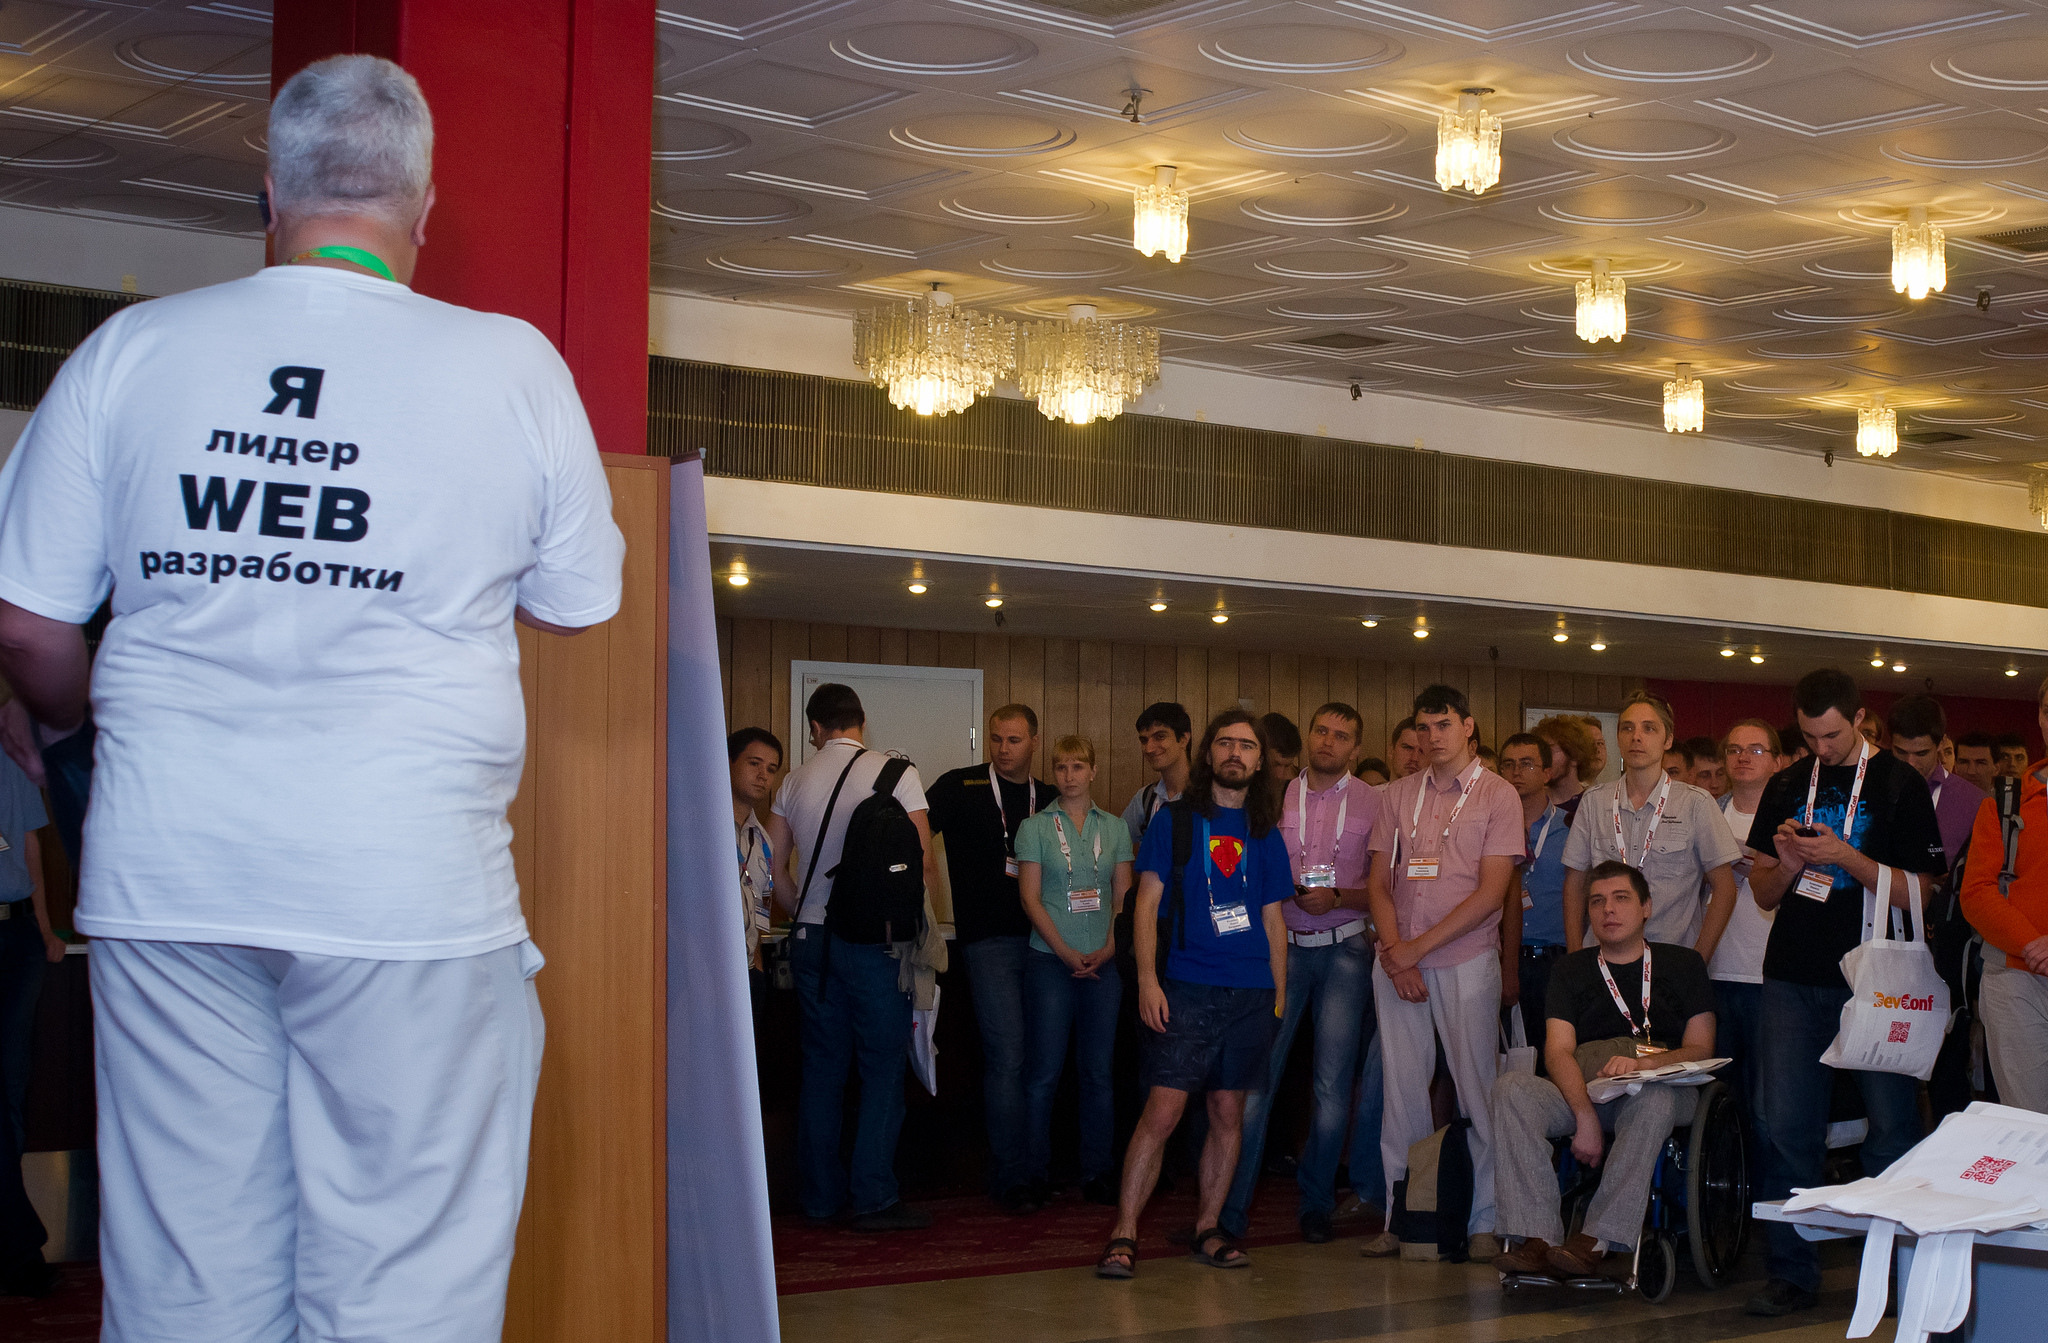 Интернет магазин часов TI-ME.RU стал партнером конкурса на конференции DevConf 2015.